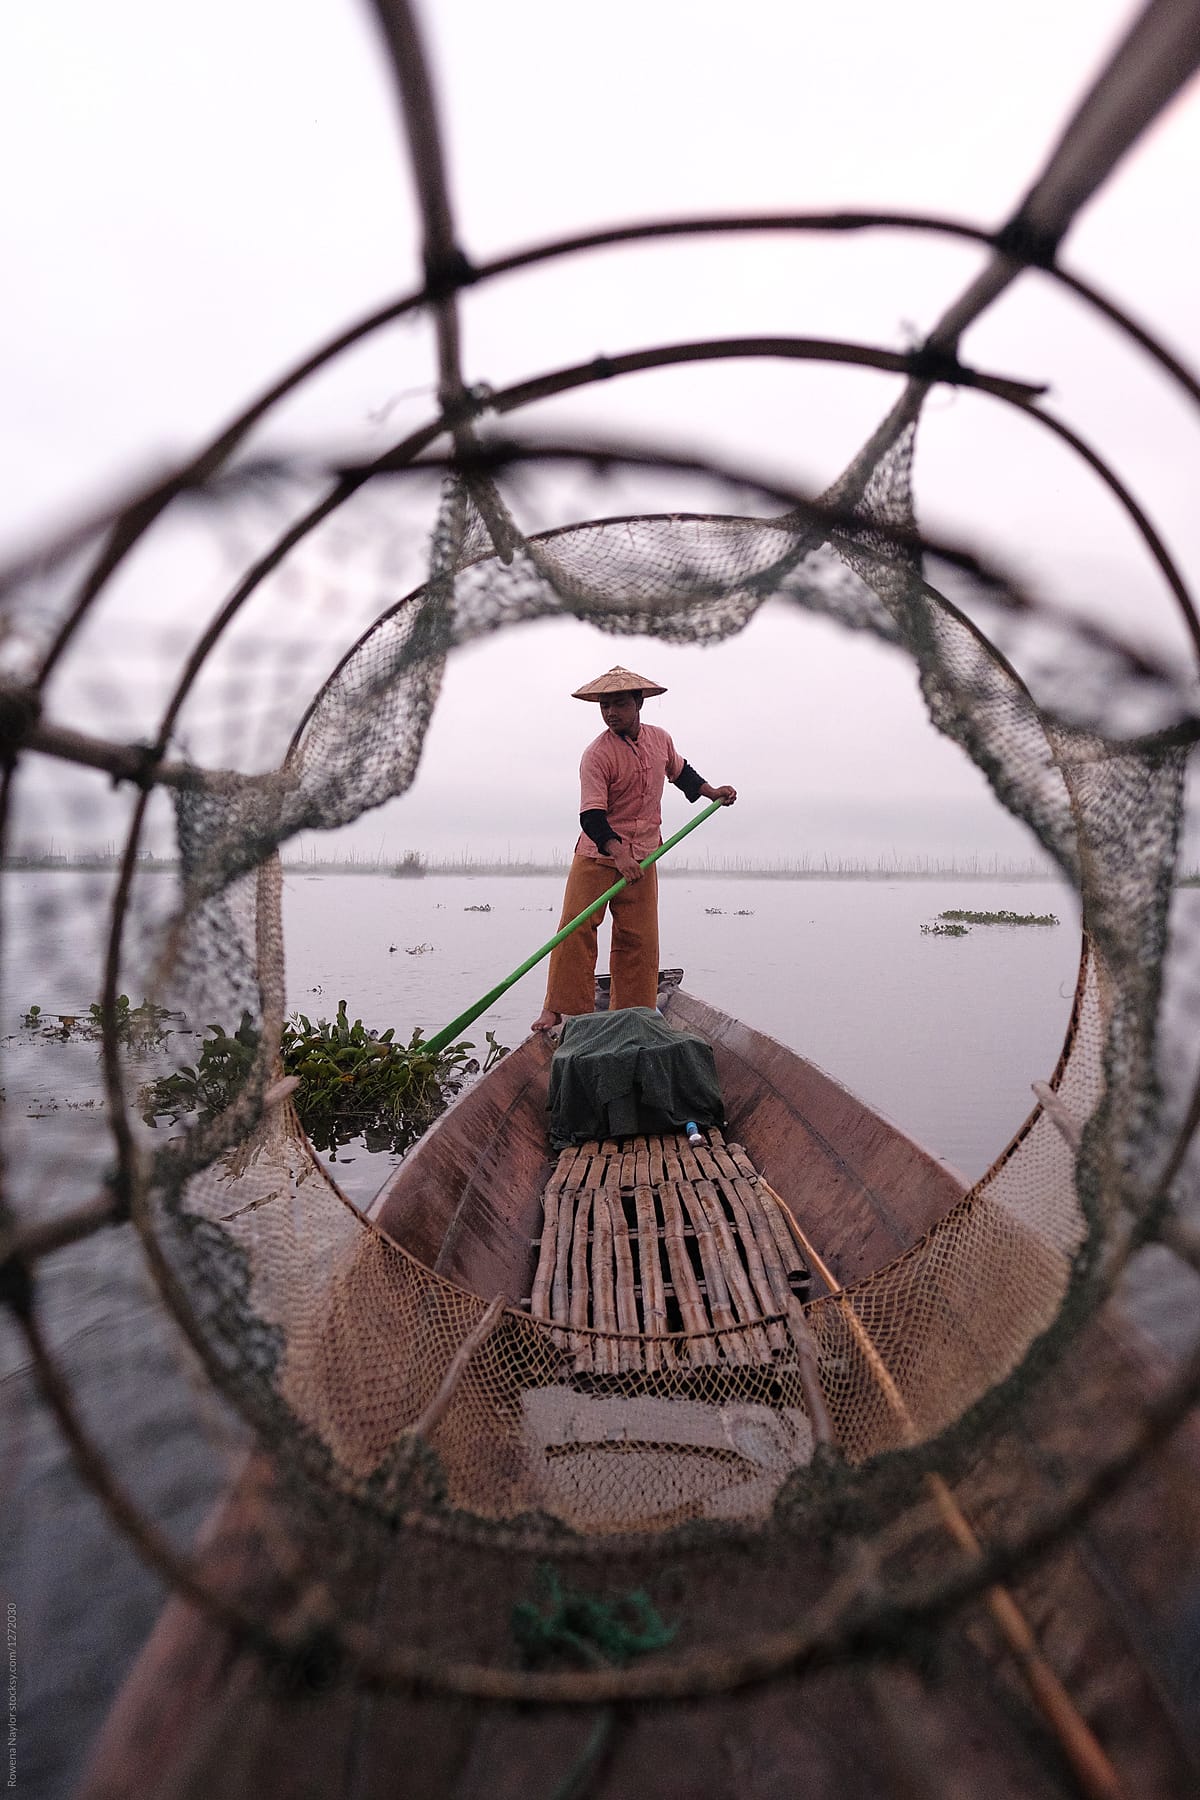 Traditional Shan fisherman fishing on Inle Lake, Myanmar